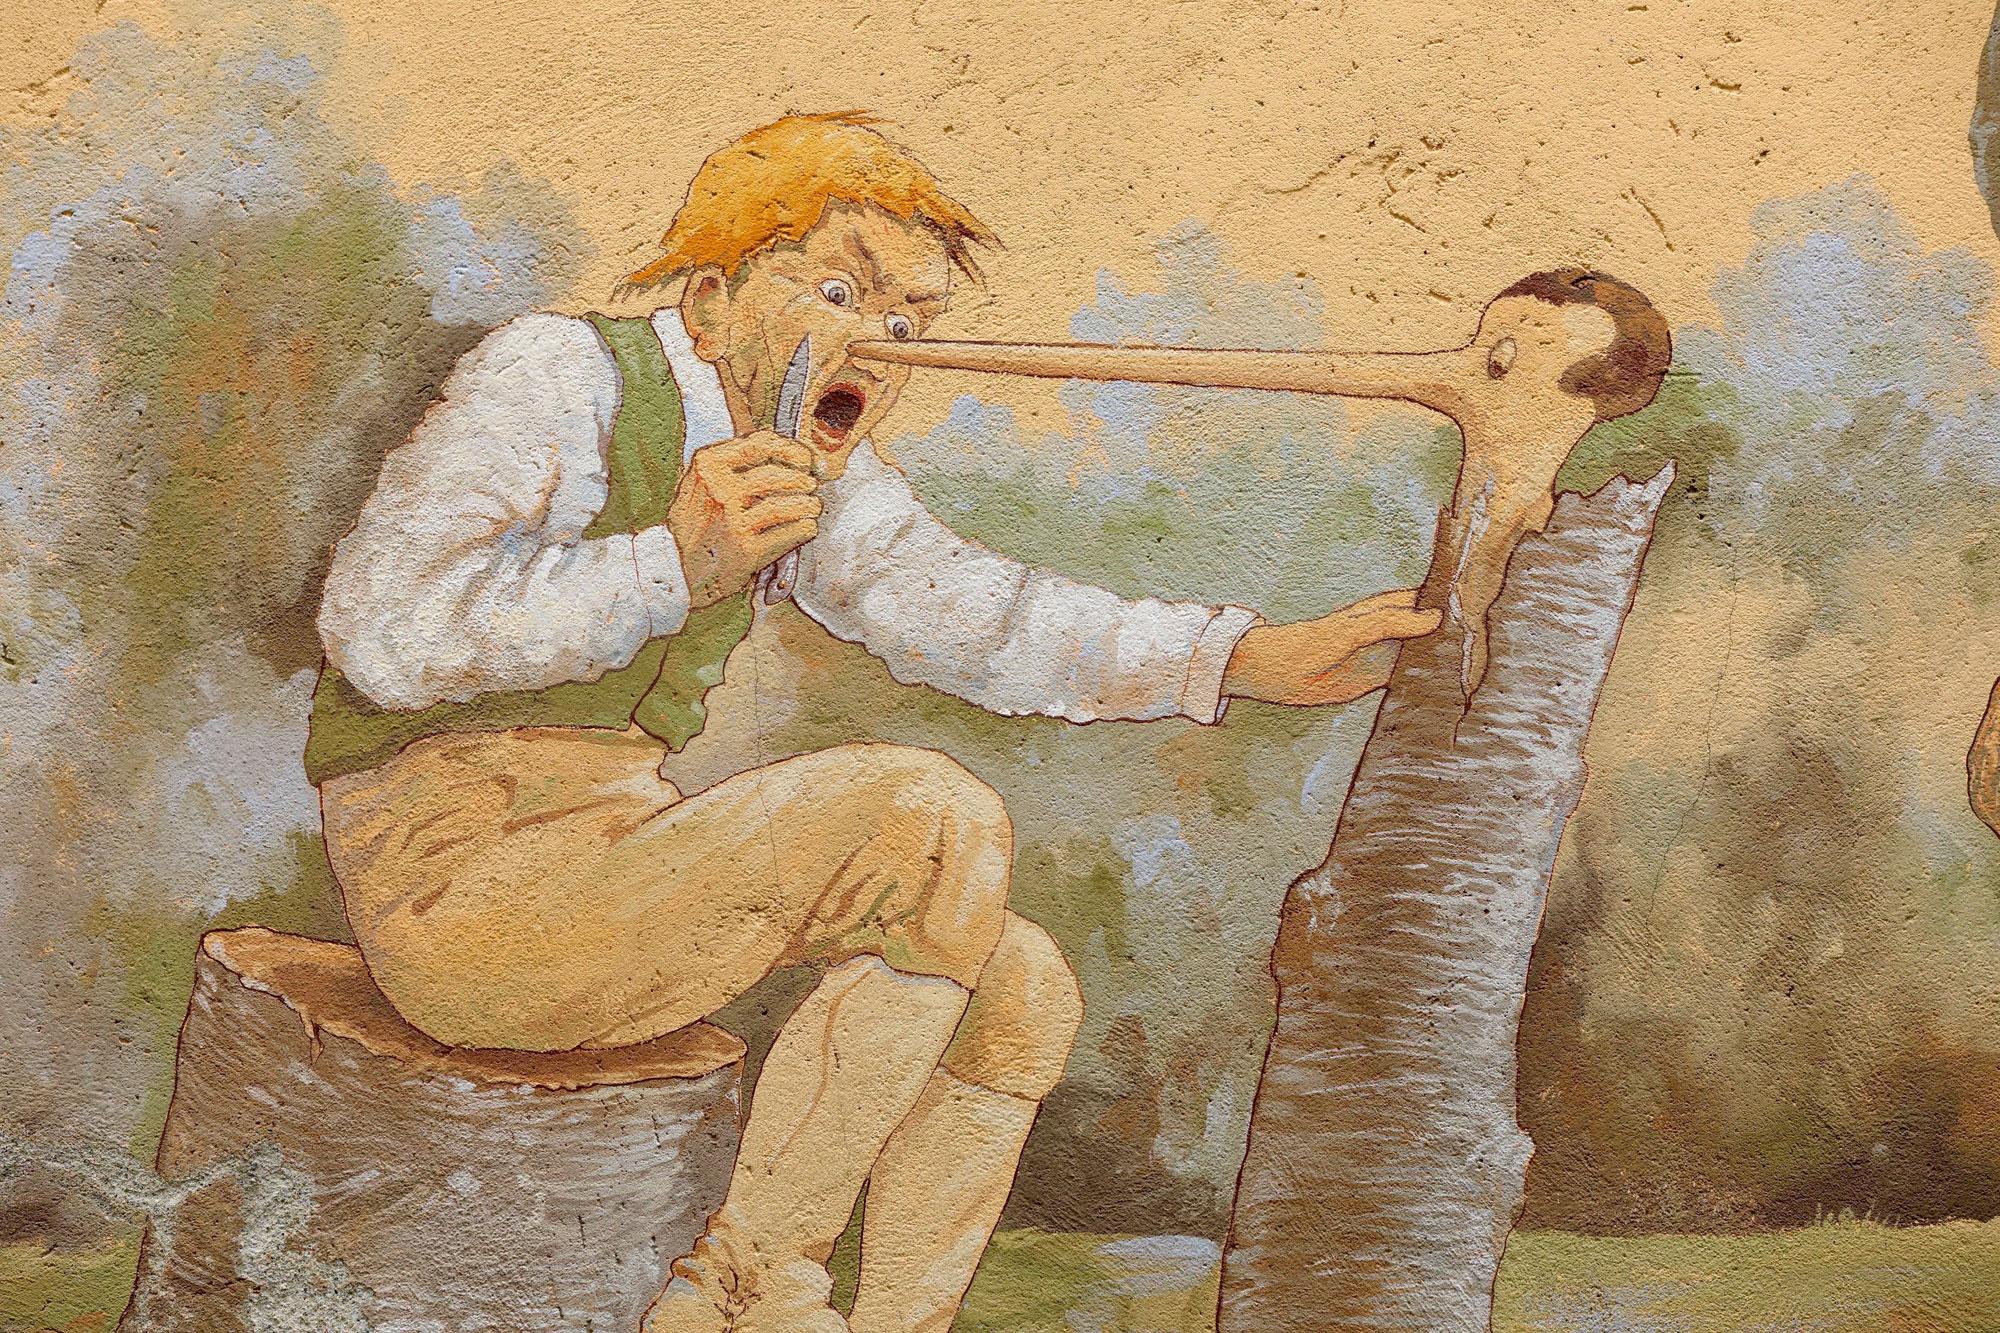 Pinocchio créé à partir d'un tronc par le menuisier Gepetto. [Hemis/AFP - MOIRENC Camille]